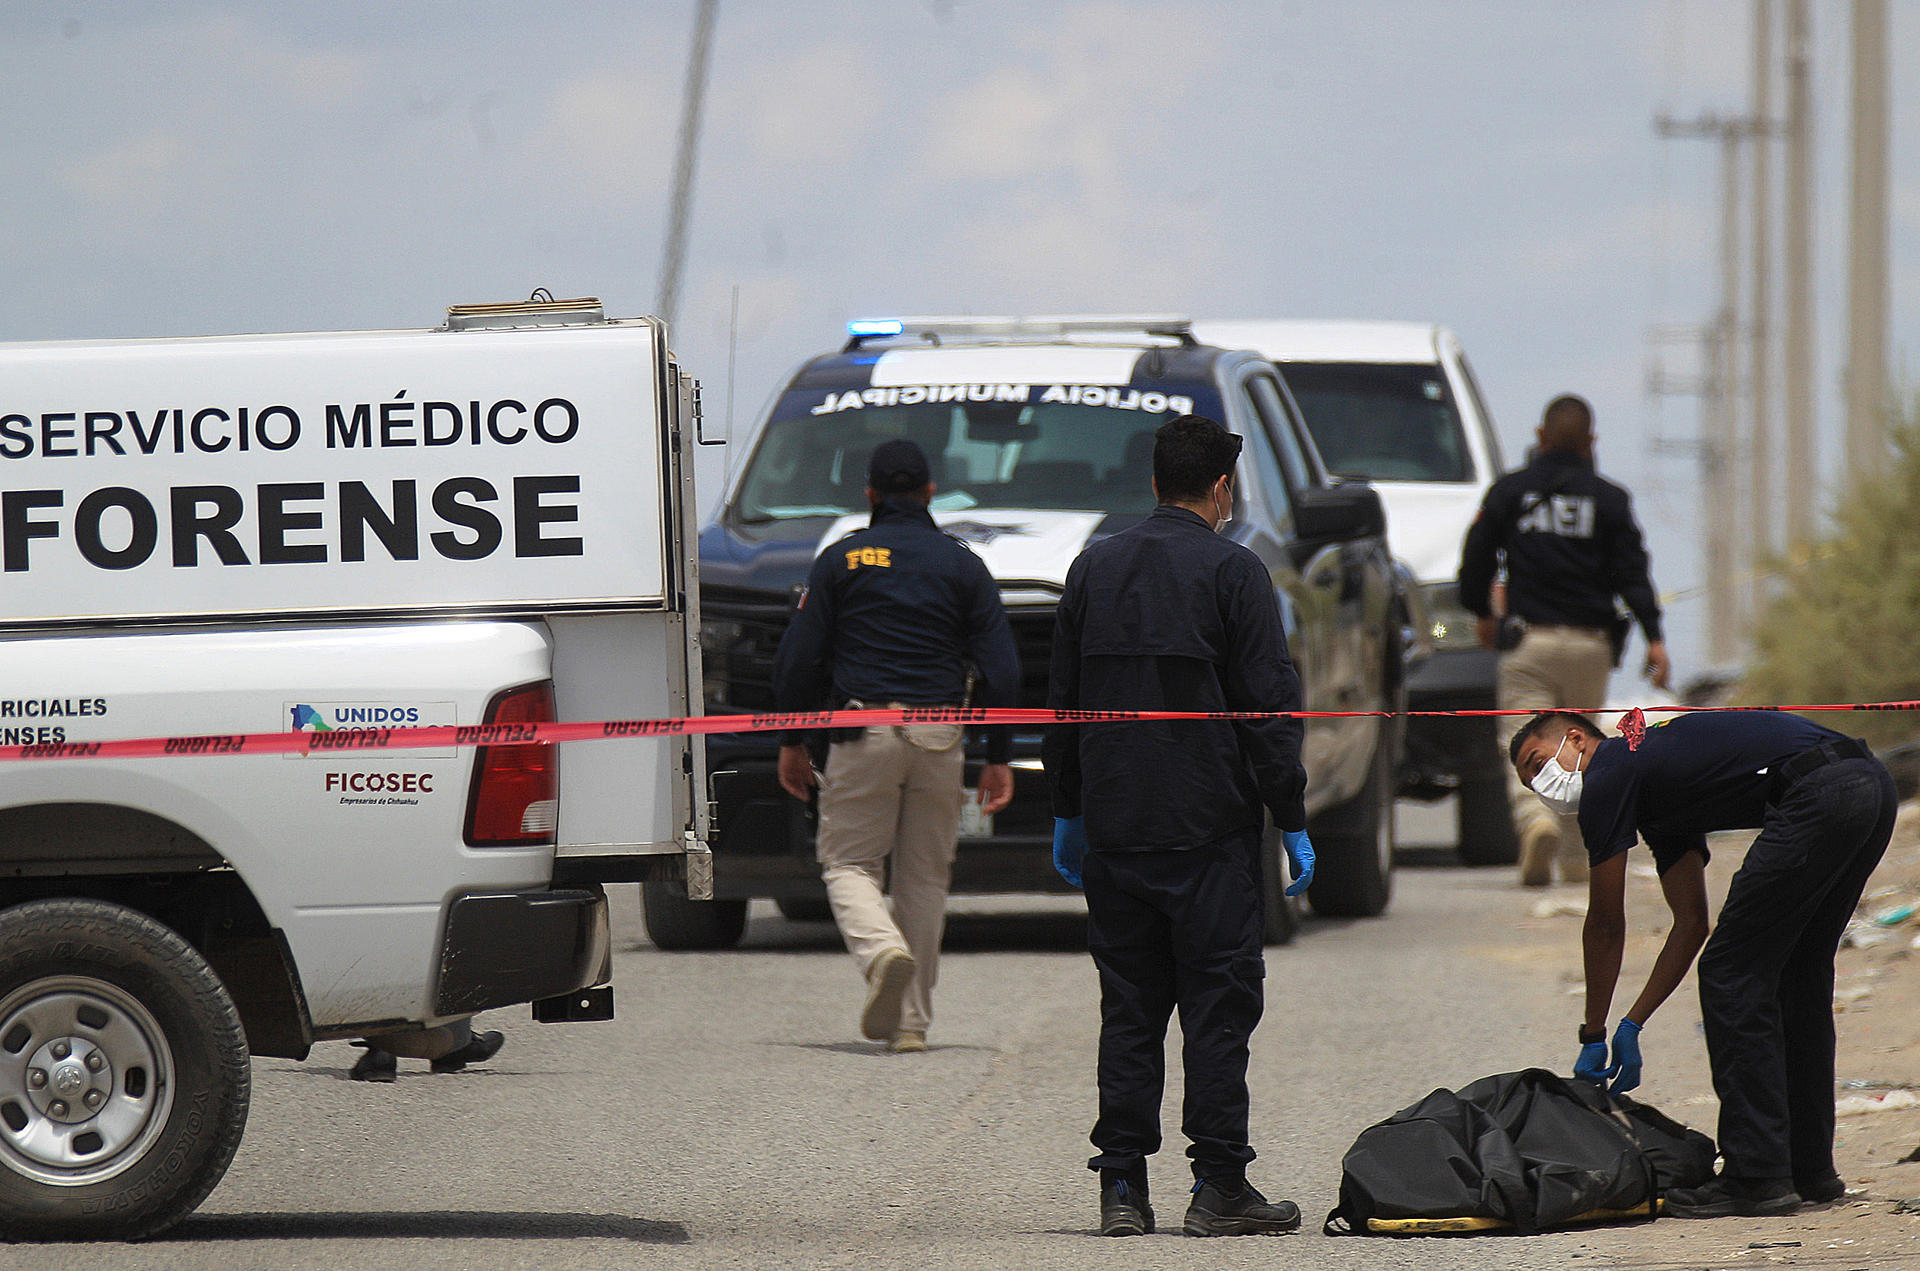 Fotografía de archivo que muestra peritos forenses mientras trabajan en la zona donde se cometió un crimen, en Ciudad Juárez, estado de Chihuahua (México). EFE/ Luis Torres